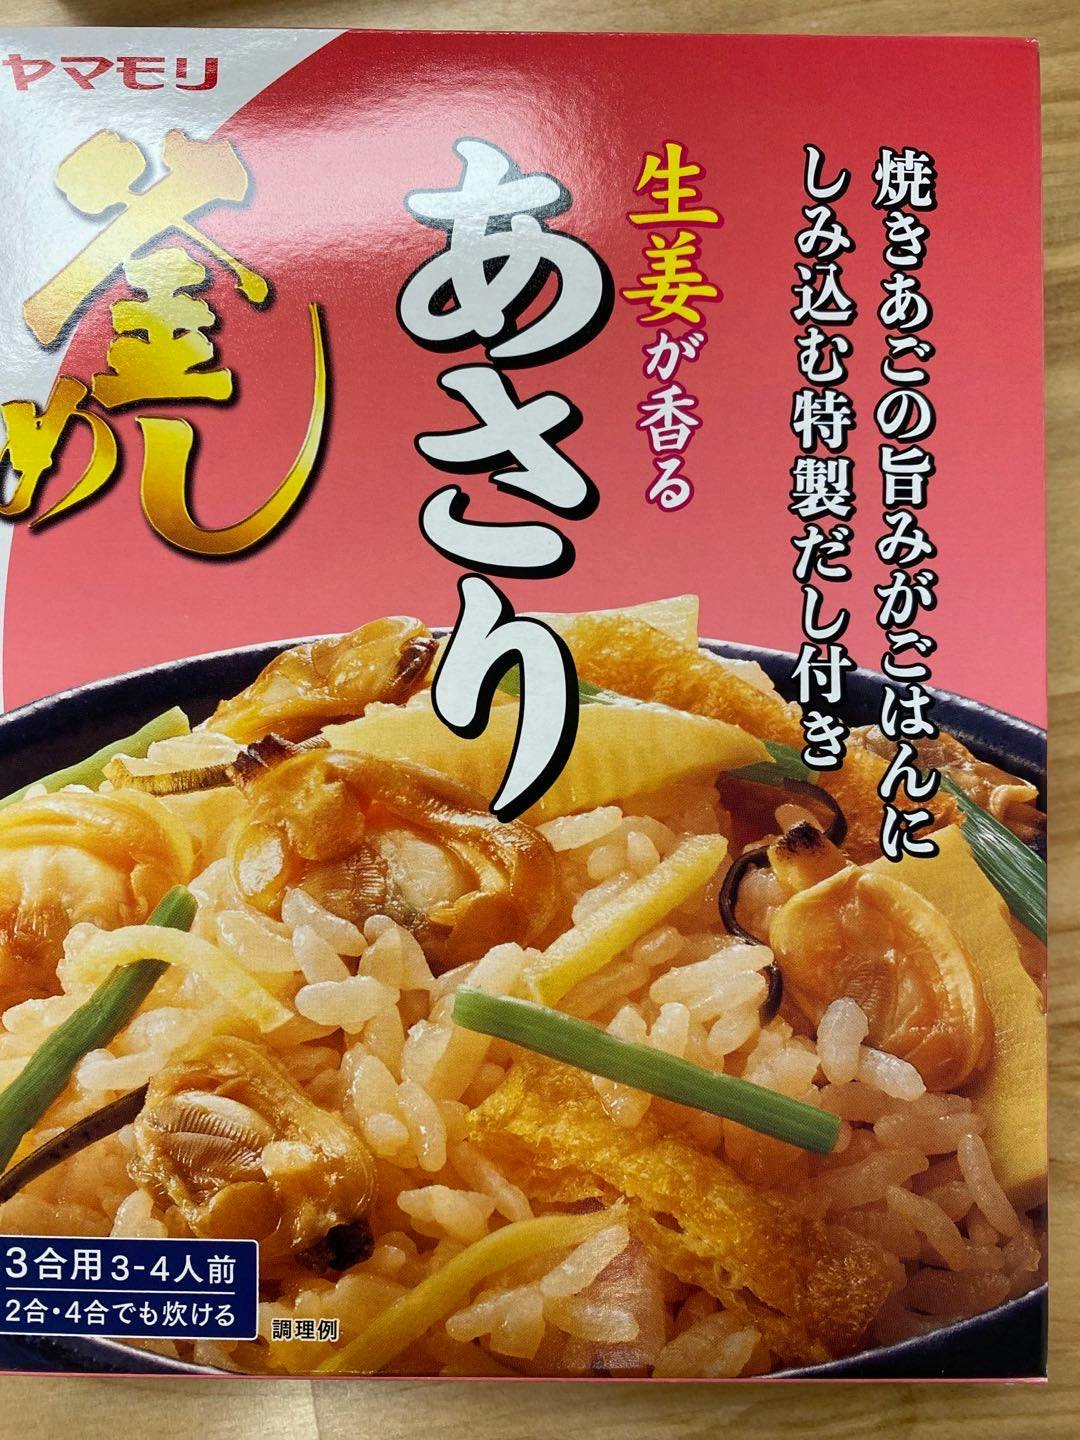 日本进口 蛤蜊蒸饭 海鲜饭